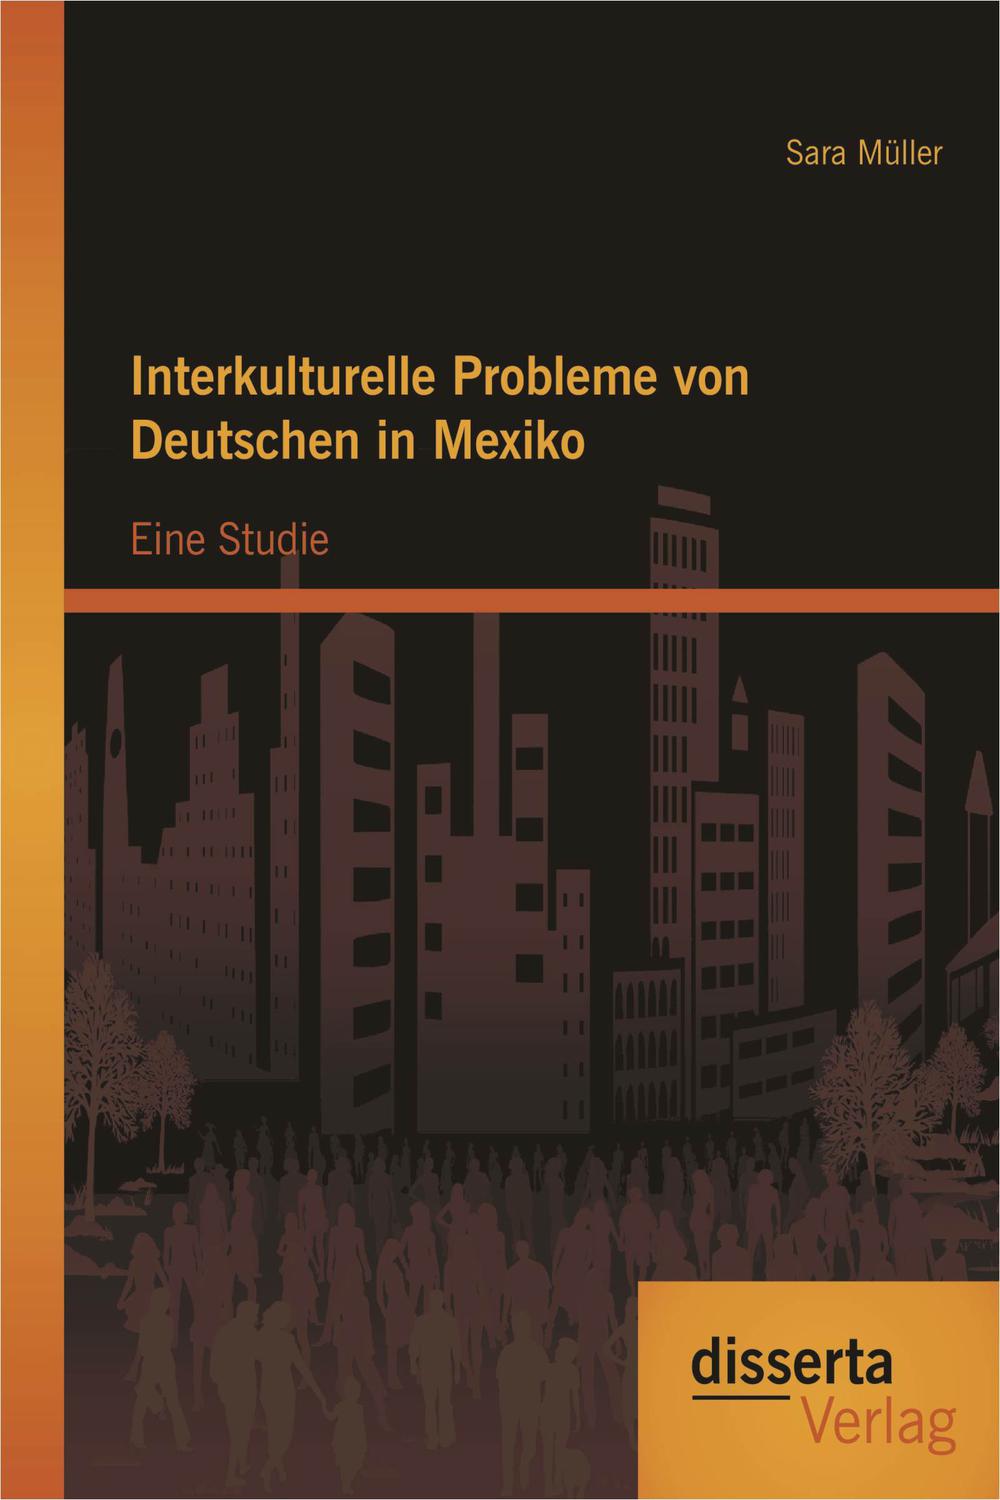 Interkulturelle Probleme von Deutschen in Mexiko: Eine Studie - Sara Müller